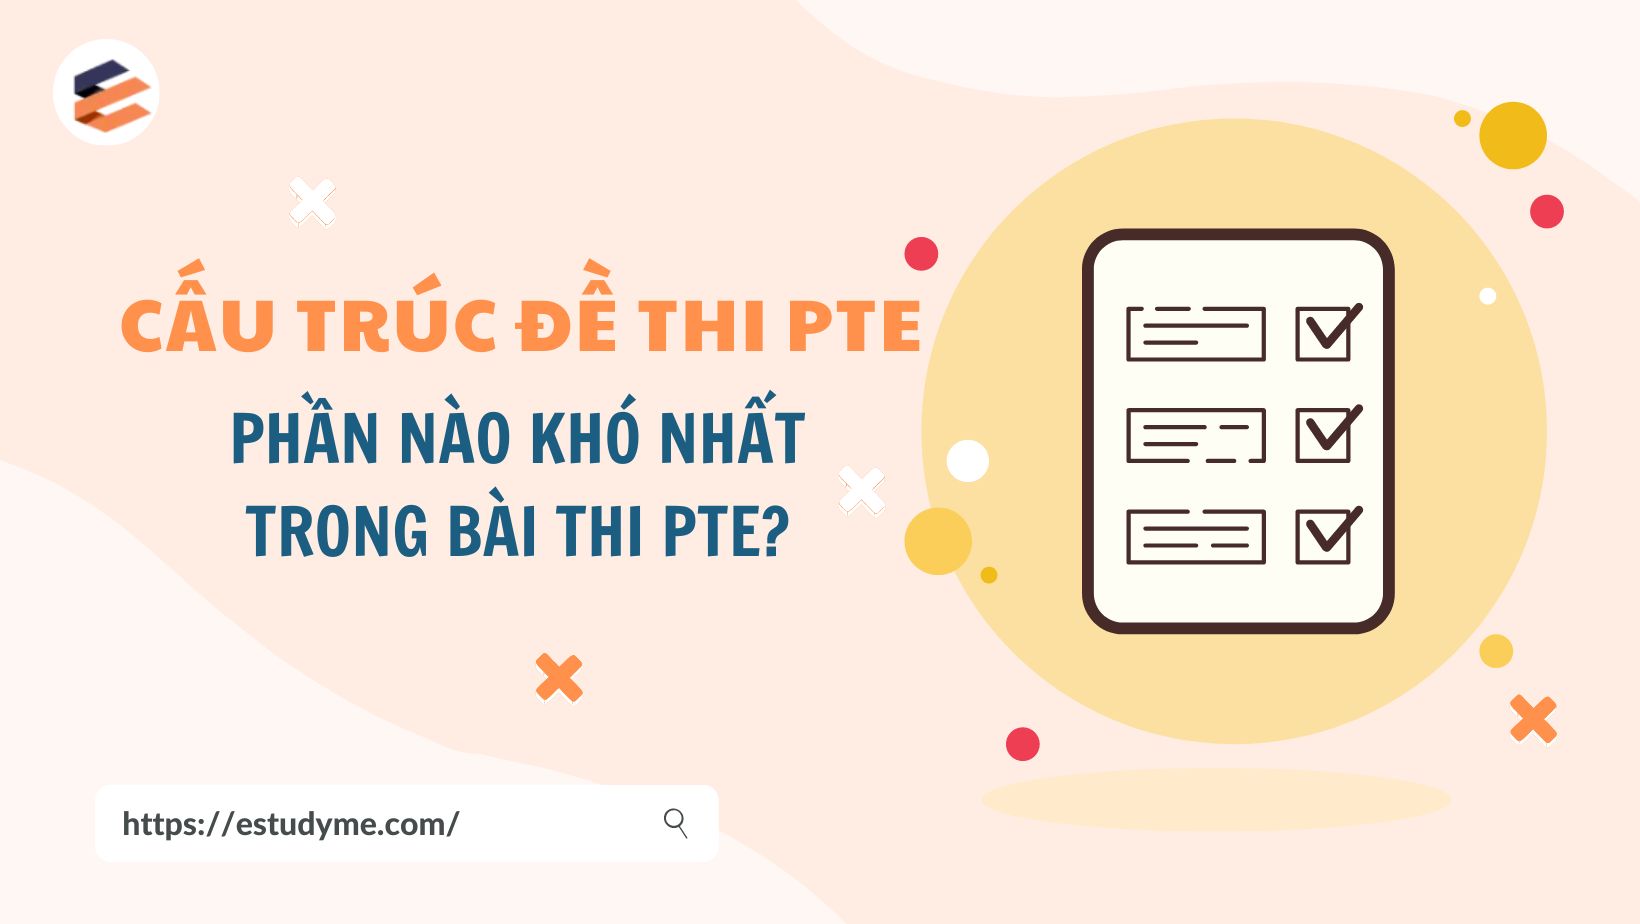 Cấu trúc đề thi PTE – Phần nào khó nhất trong bài thi PTE?